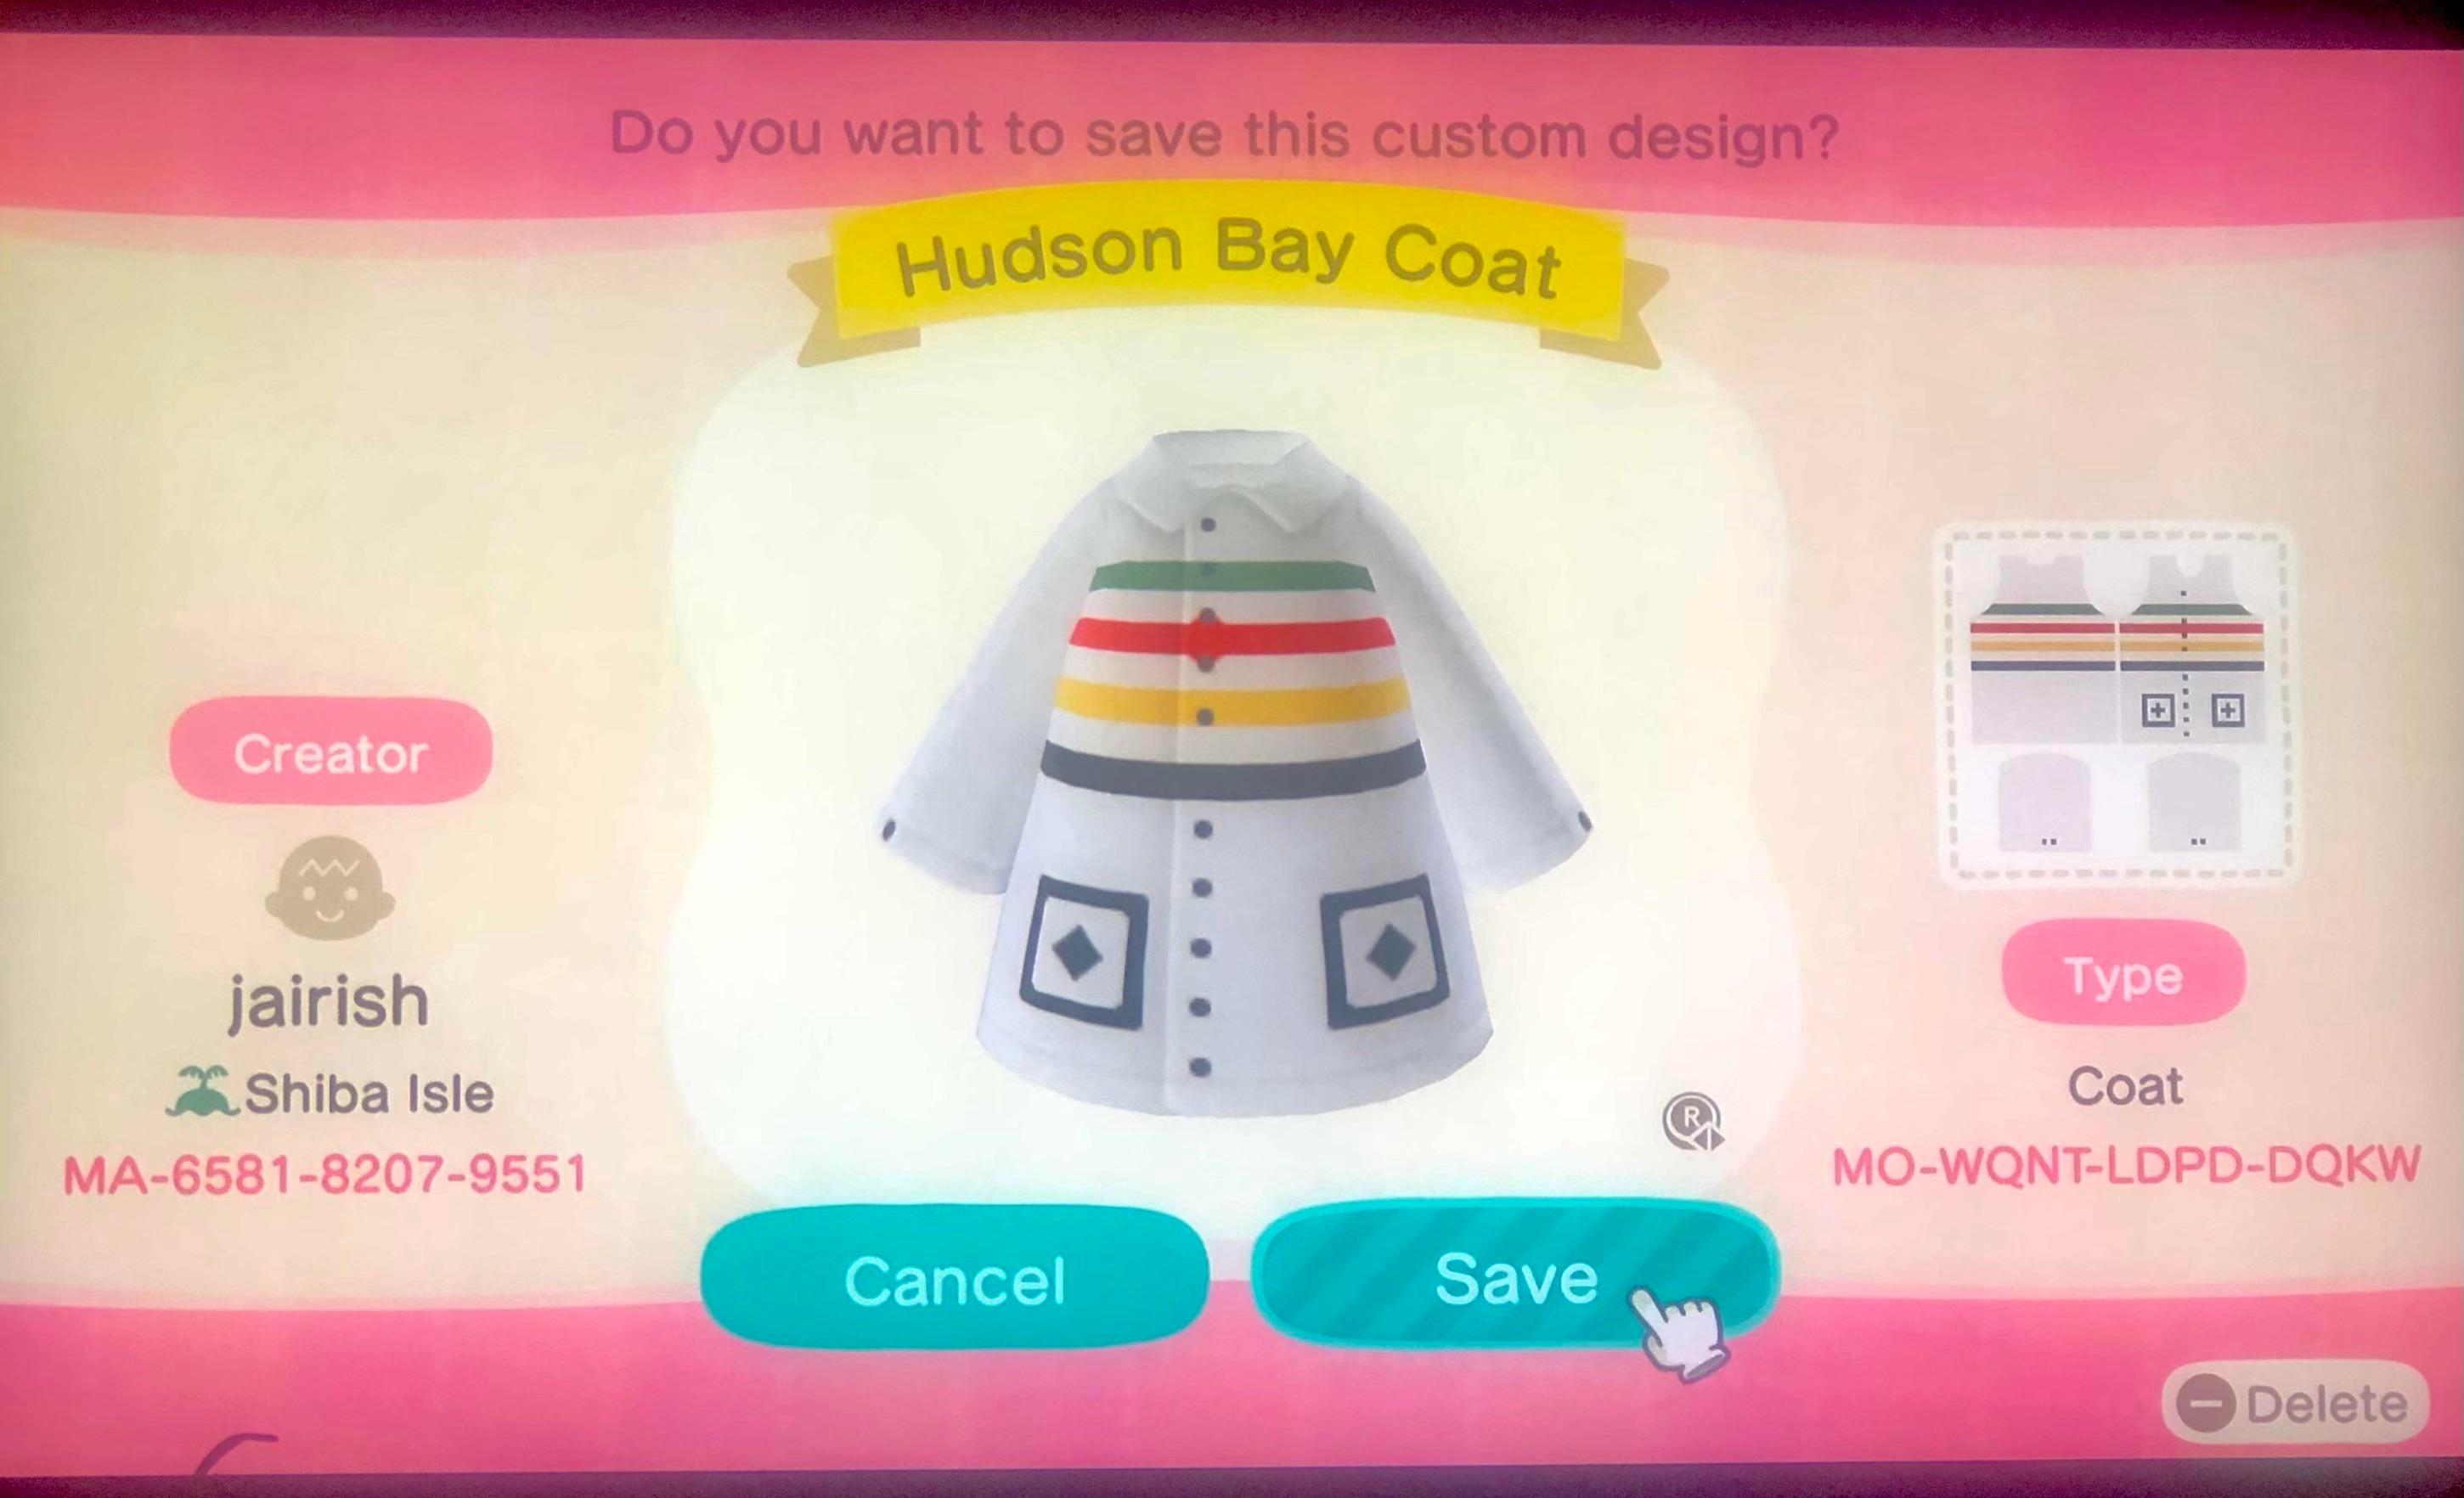 Animal Crossing Vintage Hudson Bay Coat 1st design